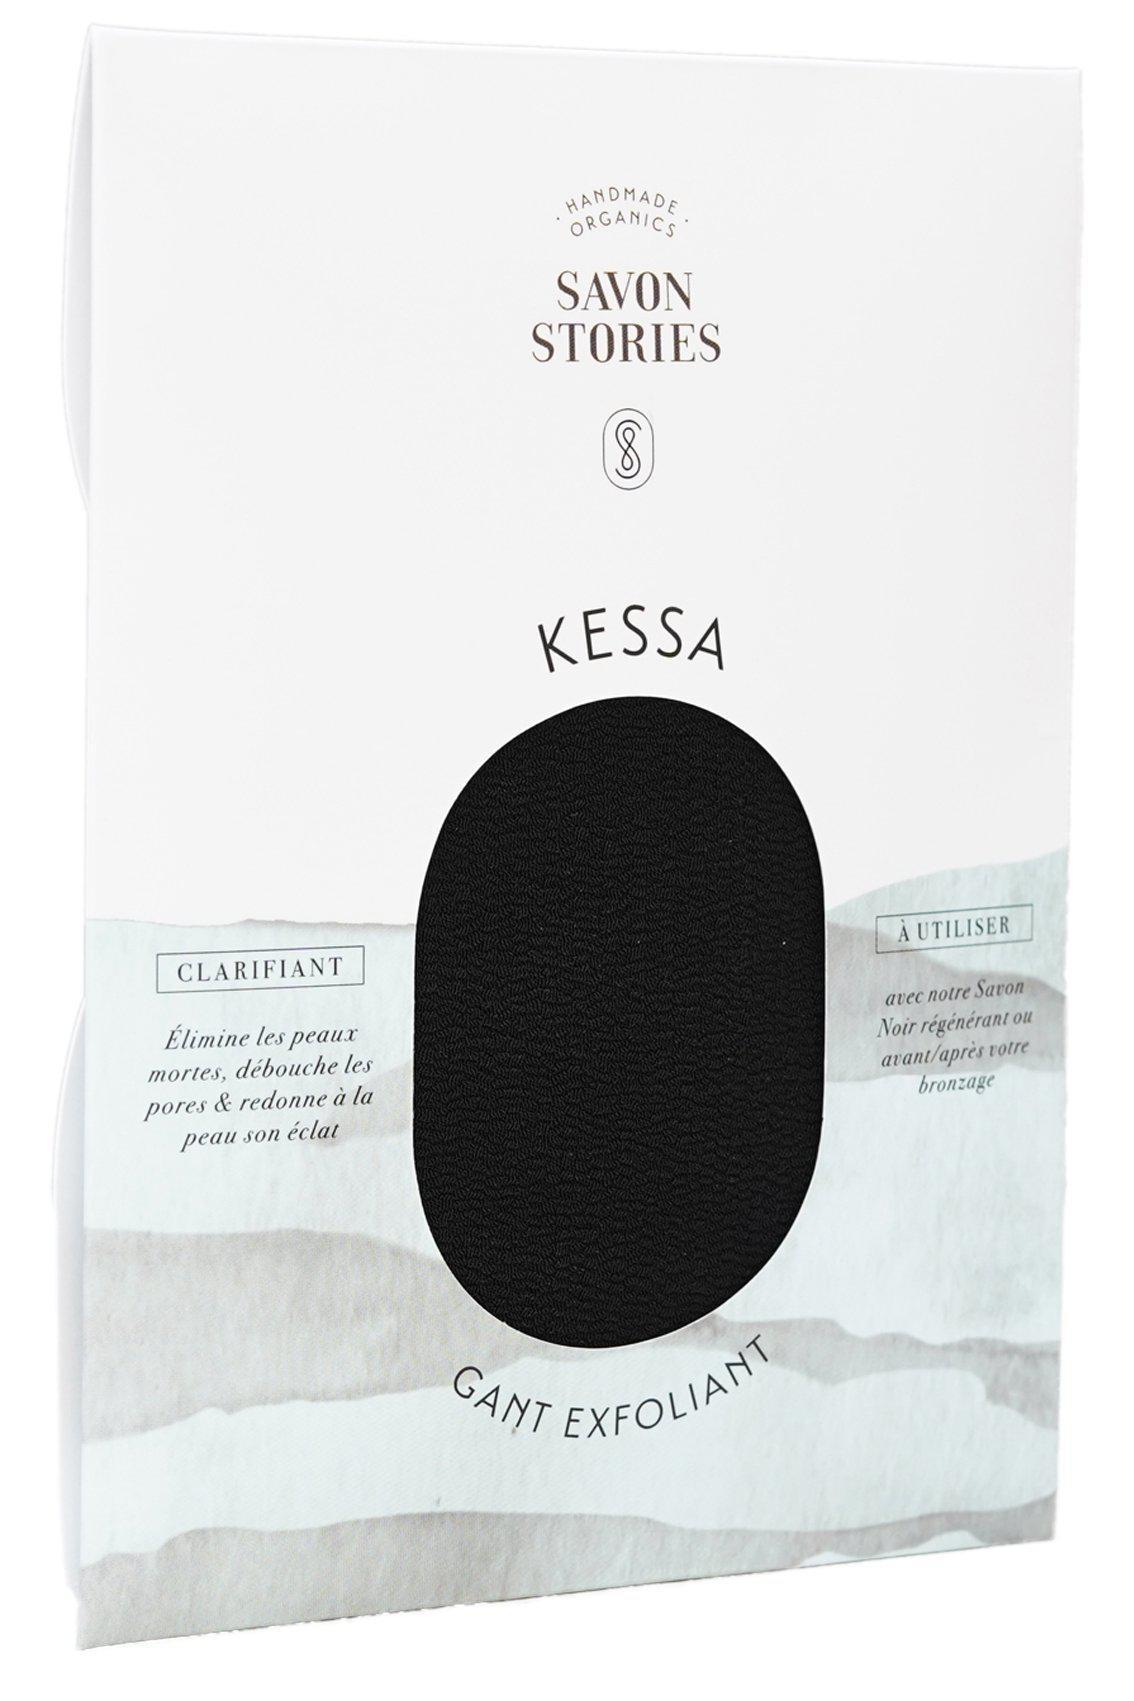 gant-exfoliant-kessa-accessoire-beaute-savon-stories-noir